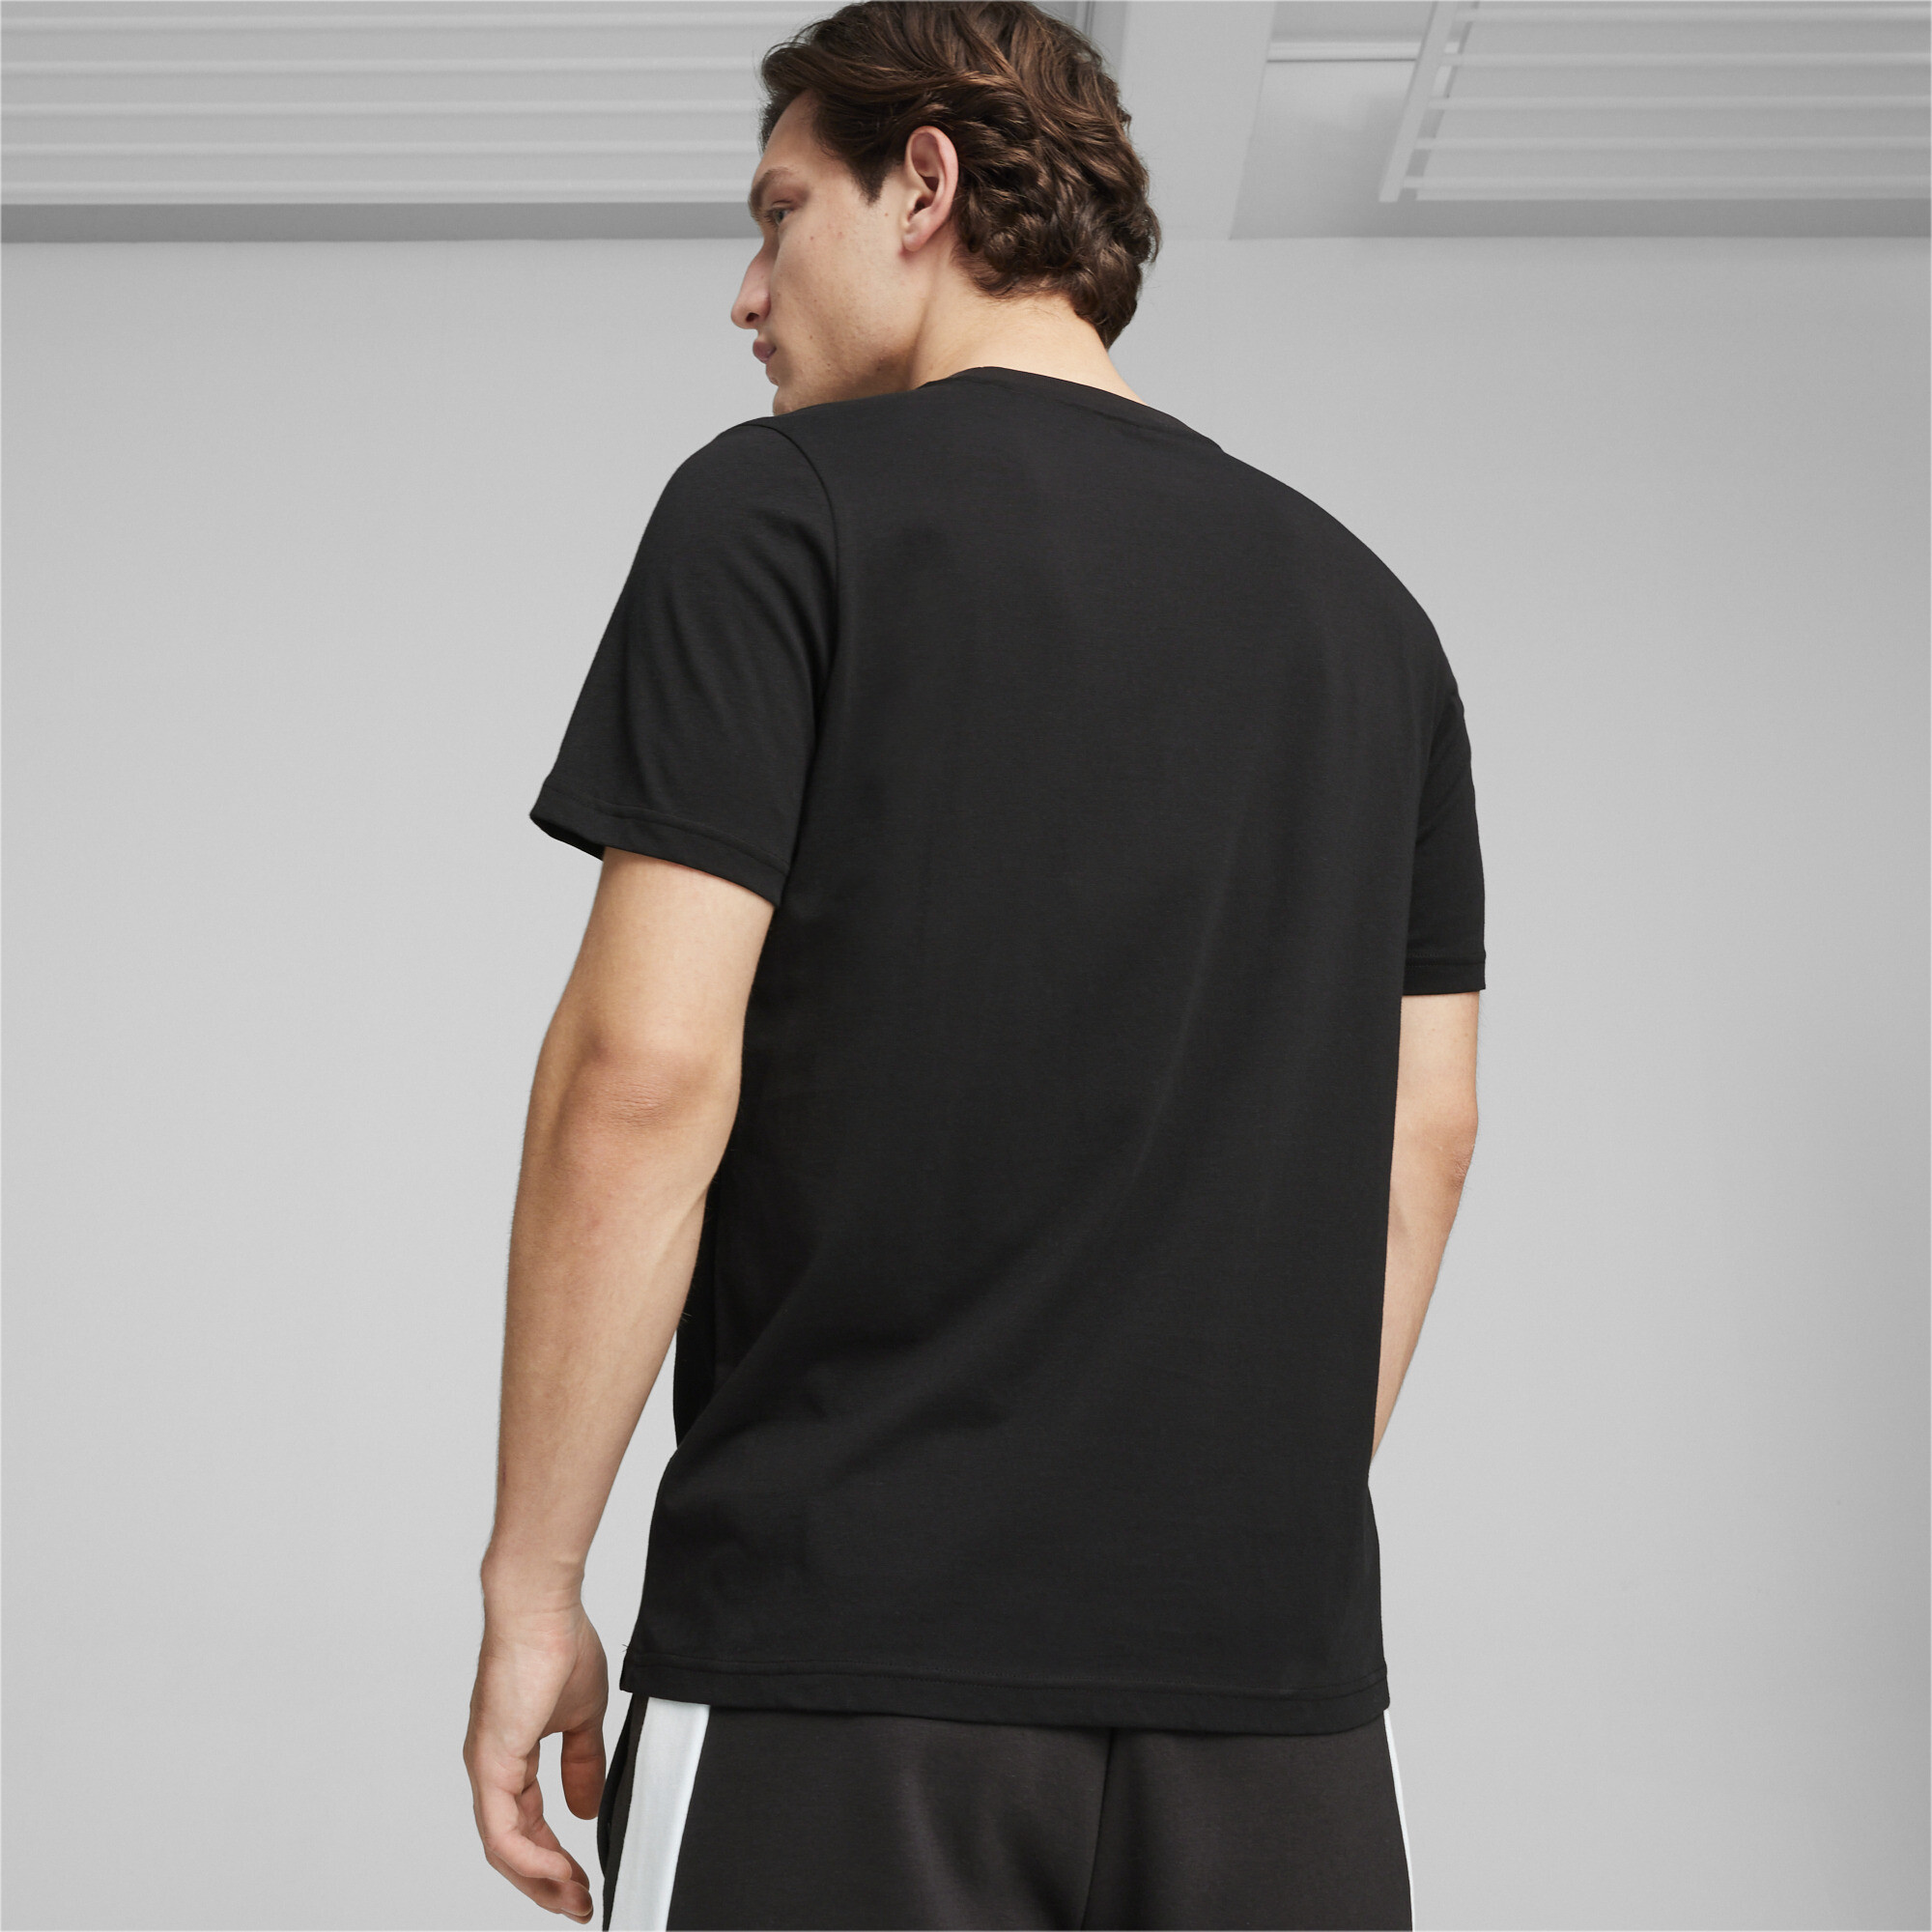 Men's Puma AMG Motorsports T-Shirt, Black, Size S, Clothing